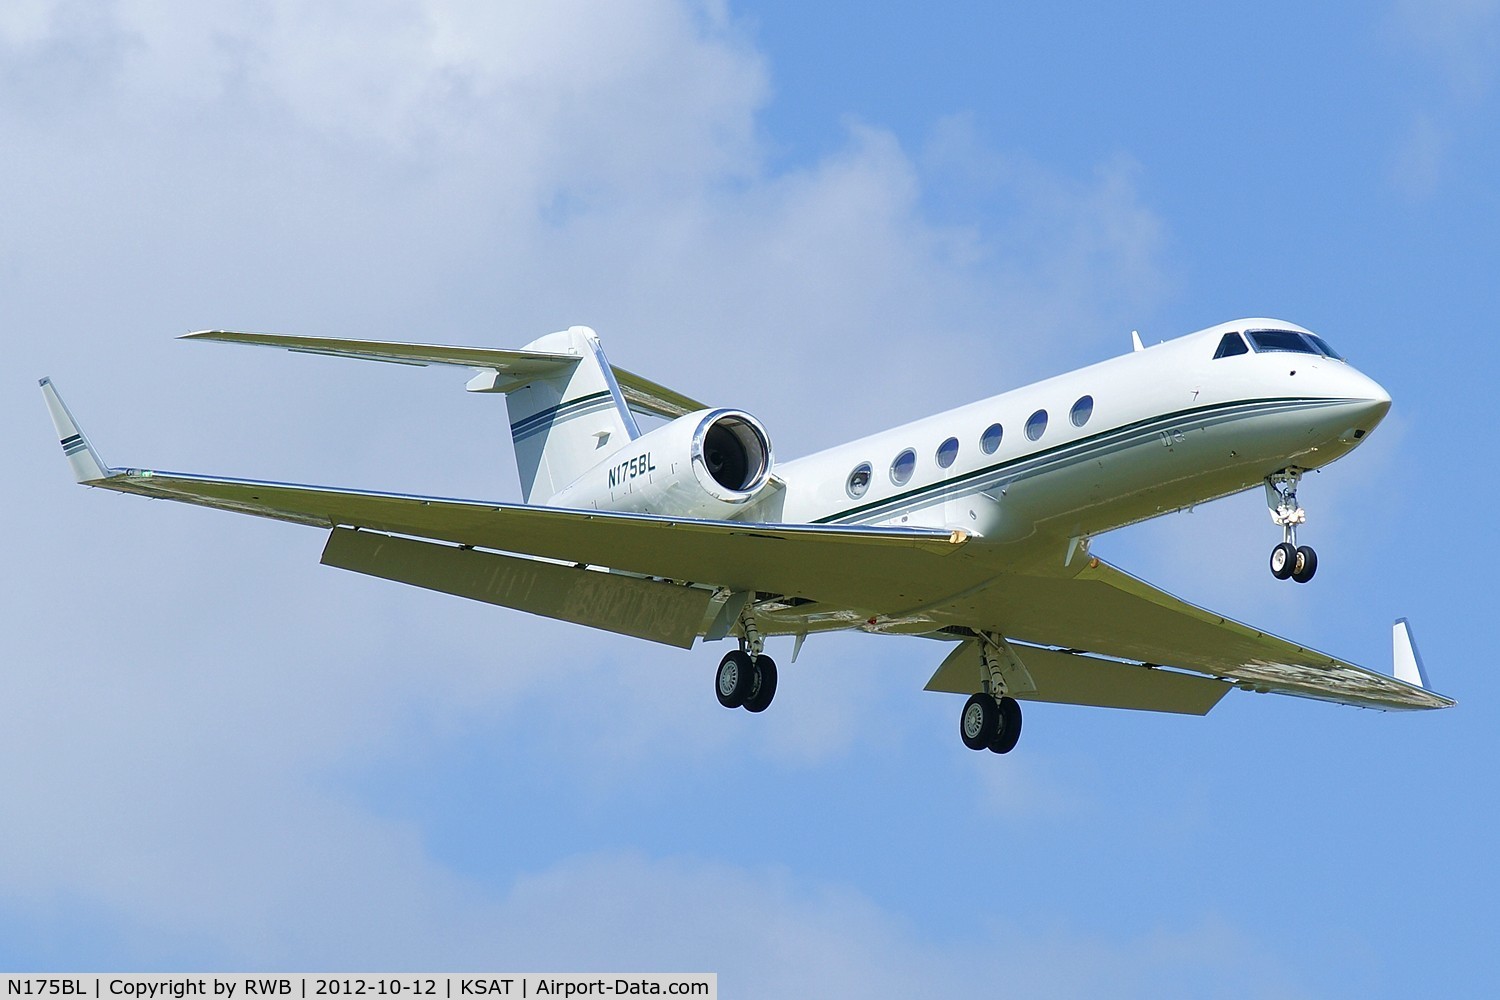 N175BL, 2011 Gulfstream Aerospace GIV-X (G450) C/N 4223, On approach 12R